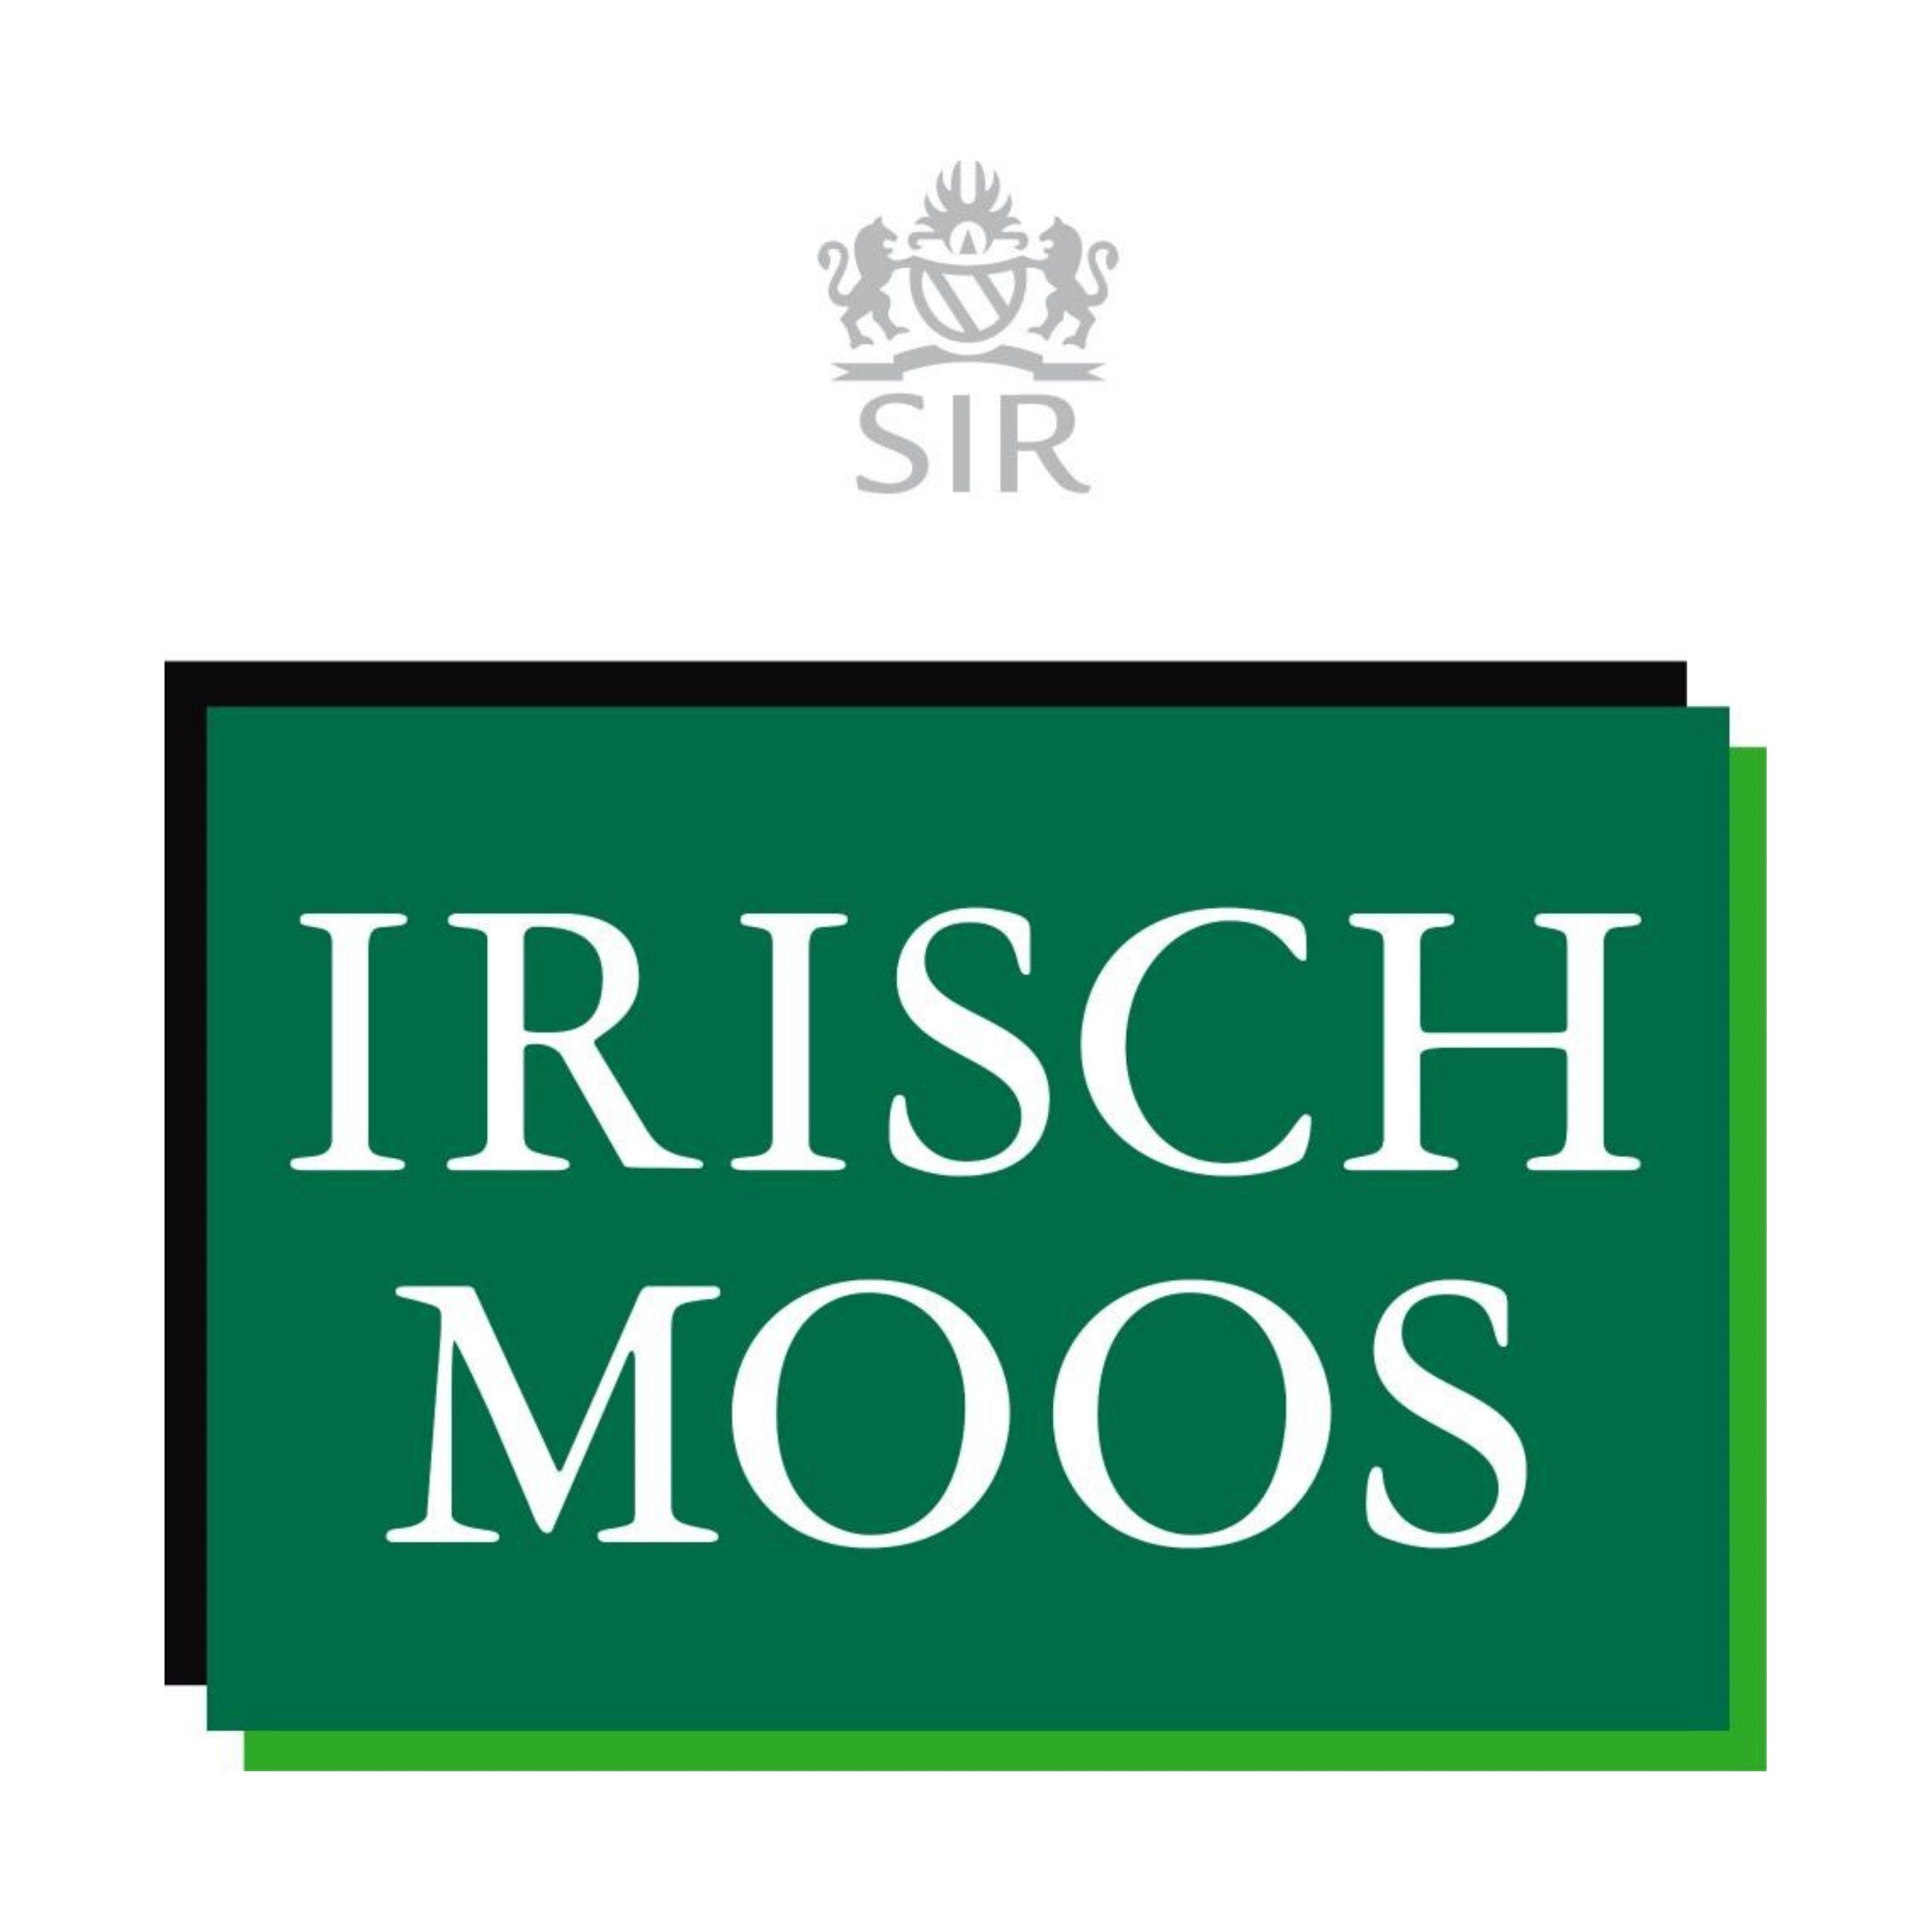 Shave SIR After Sir Irisch 150 IRISCH Gesichts-Reinigungslotion ml MOOS Moos Lotion